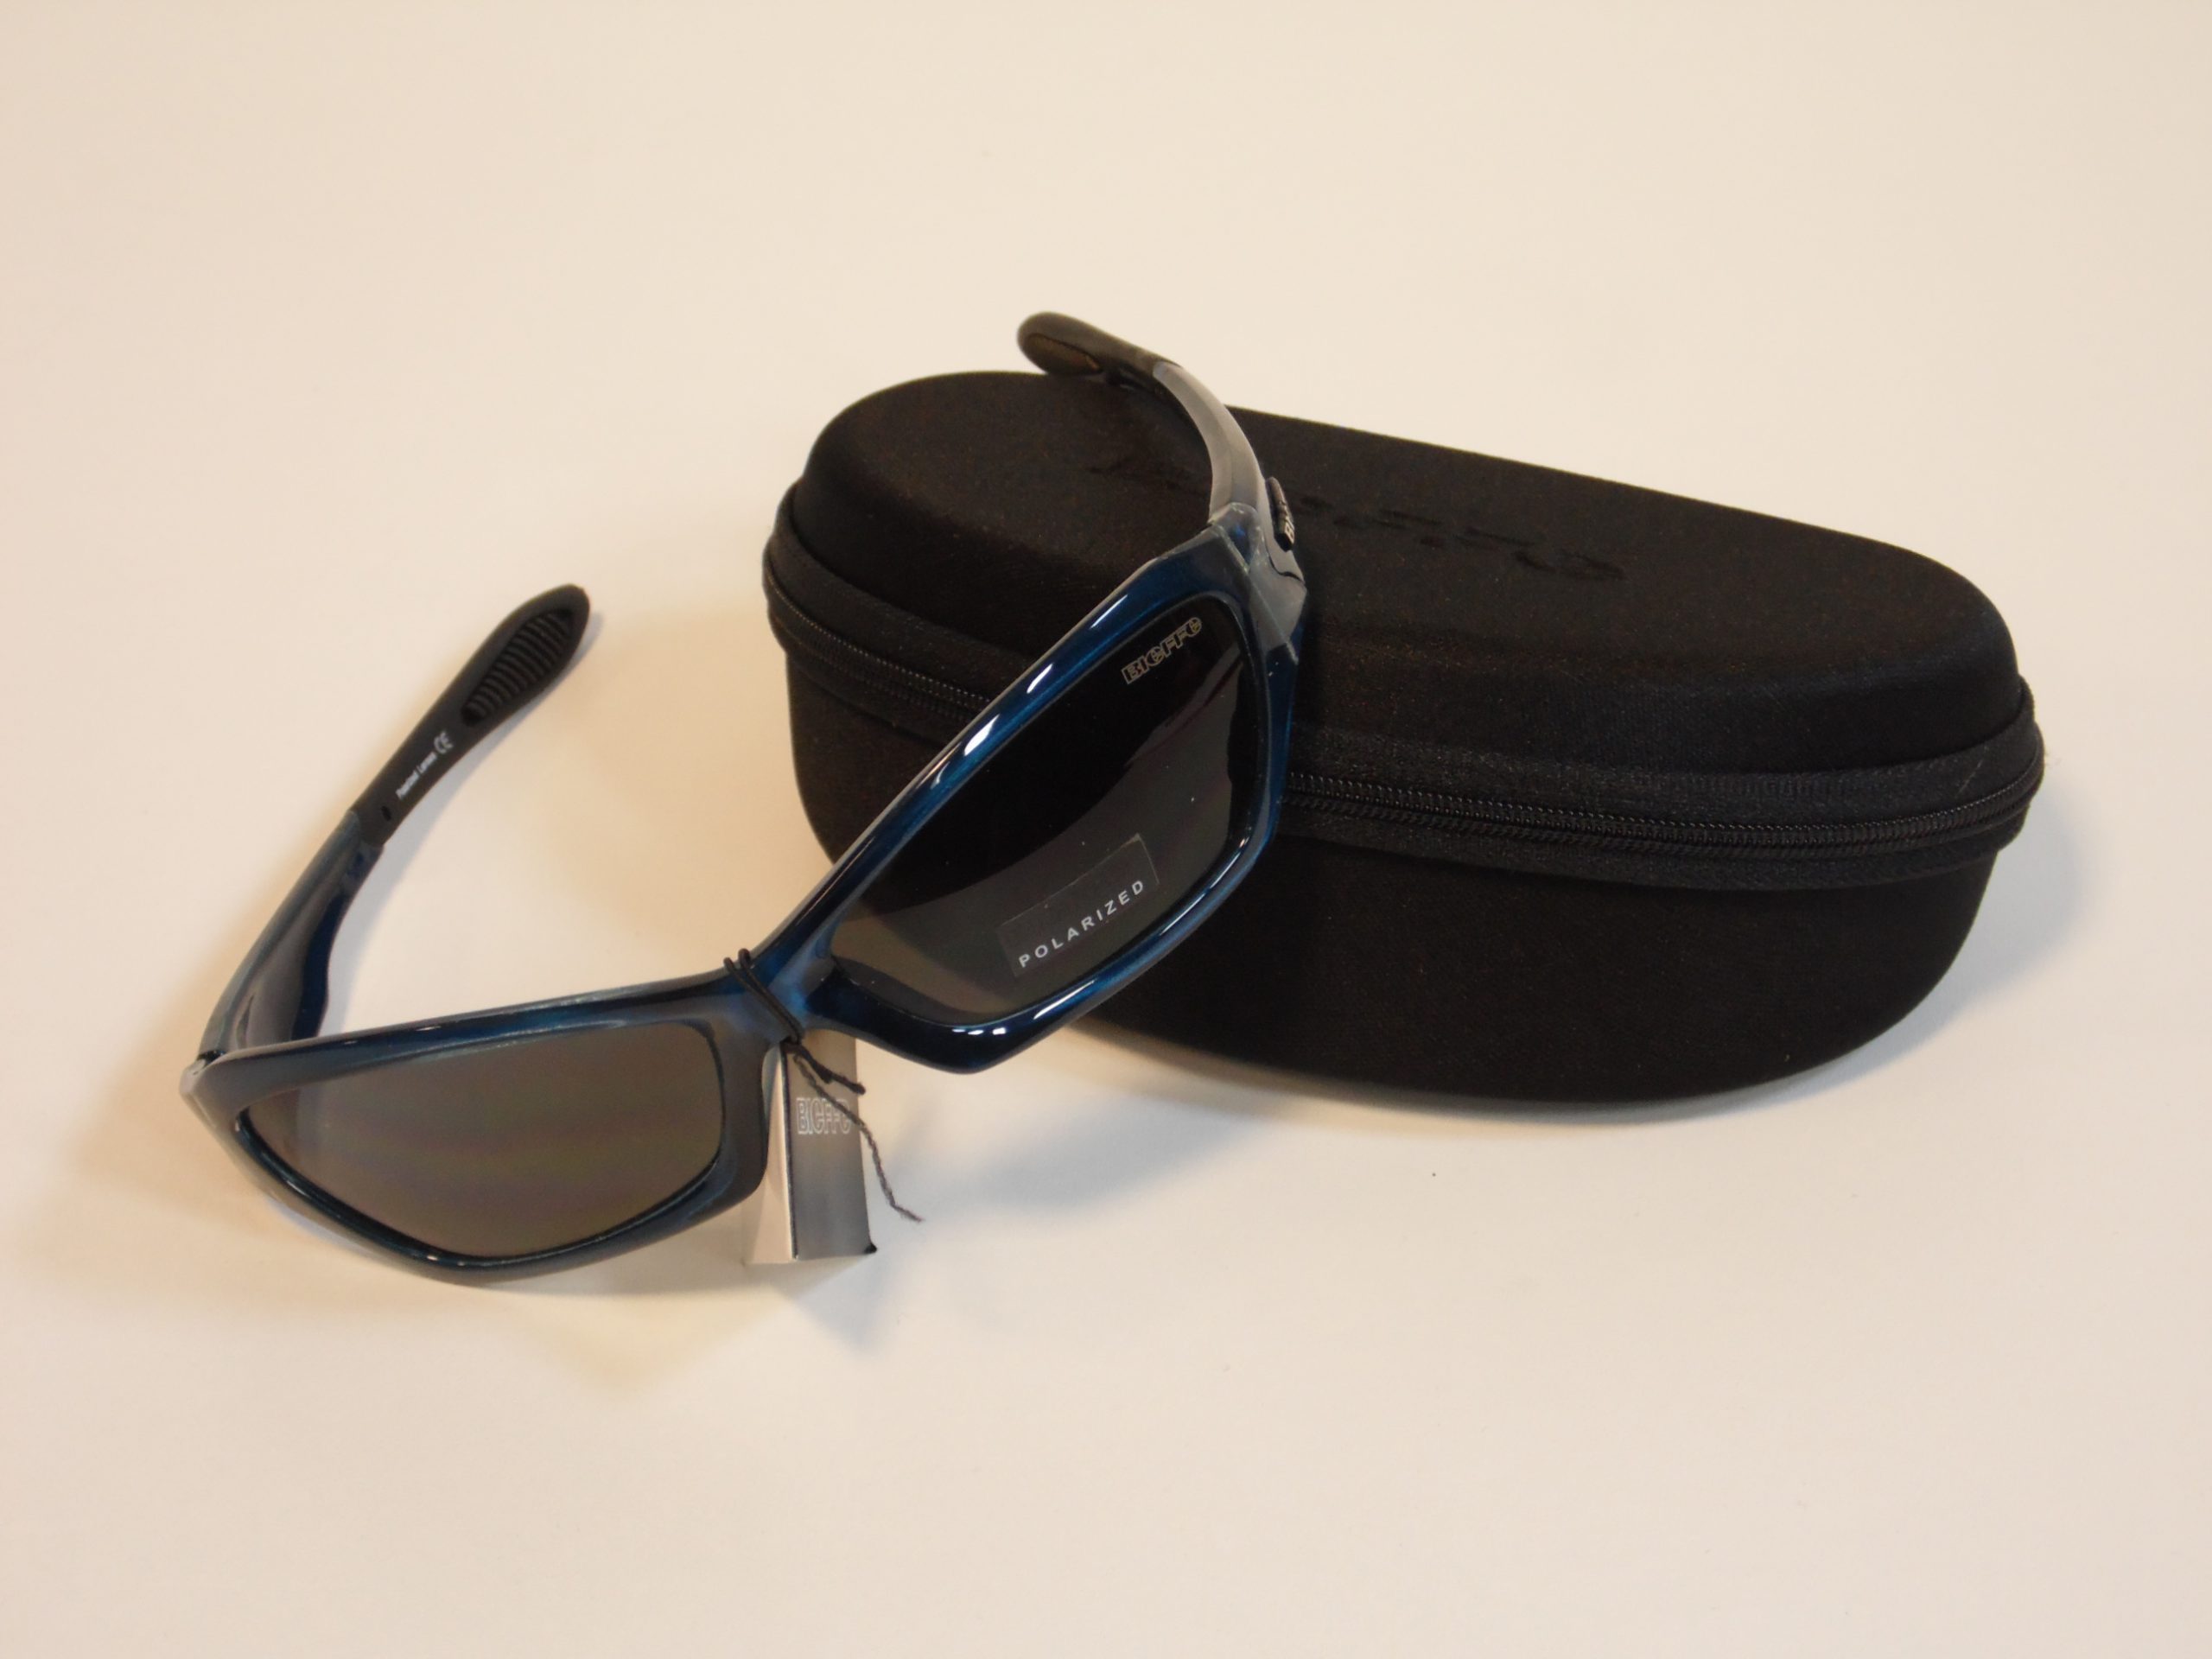 occhiali da sport bieffe equipment con lenti polarizzate e custodia taglia unica color blu trasparente